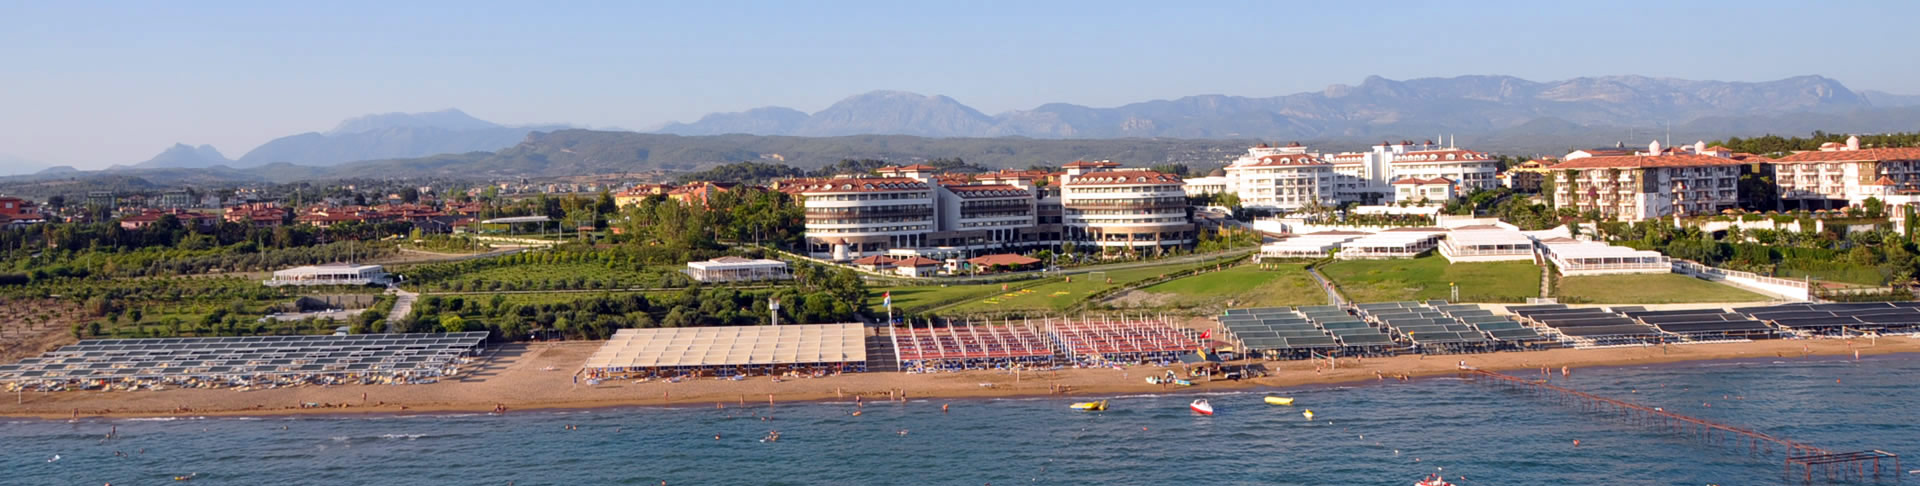 Colakli luchthaven taxi transfer van-naar vakantie hotel vliegveld transfers Antalya Luchthaven vakantiereizen Turkije